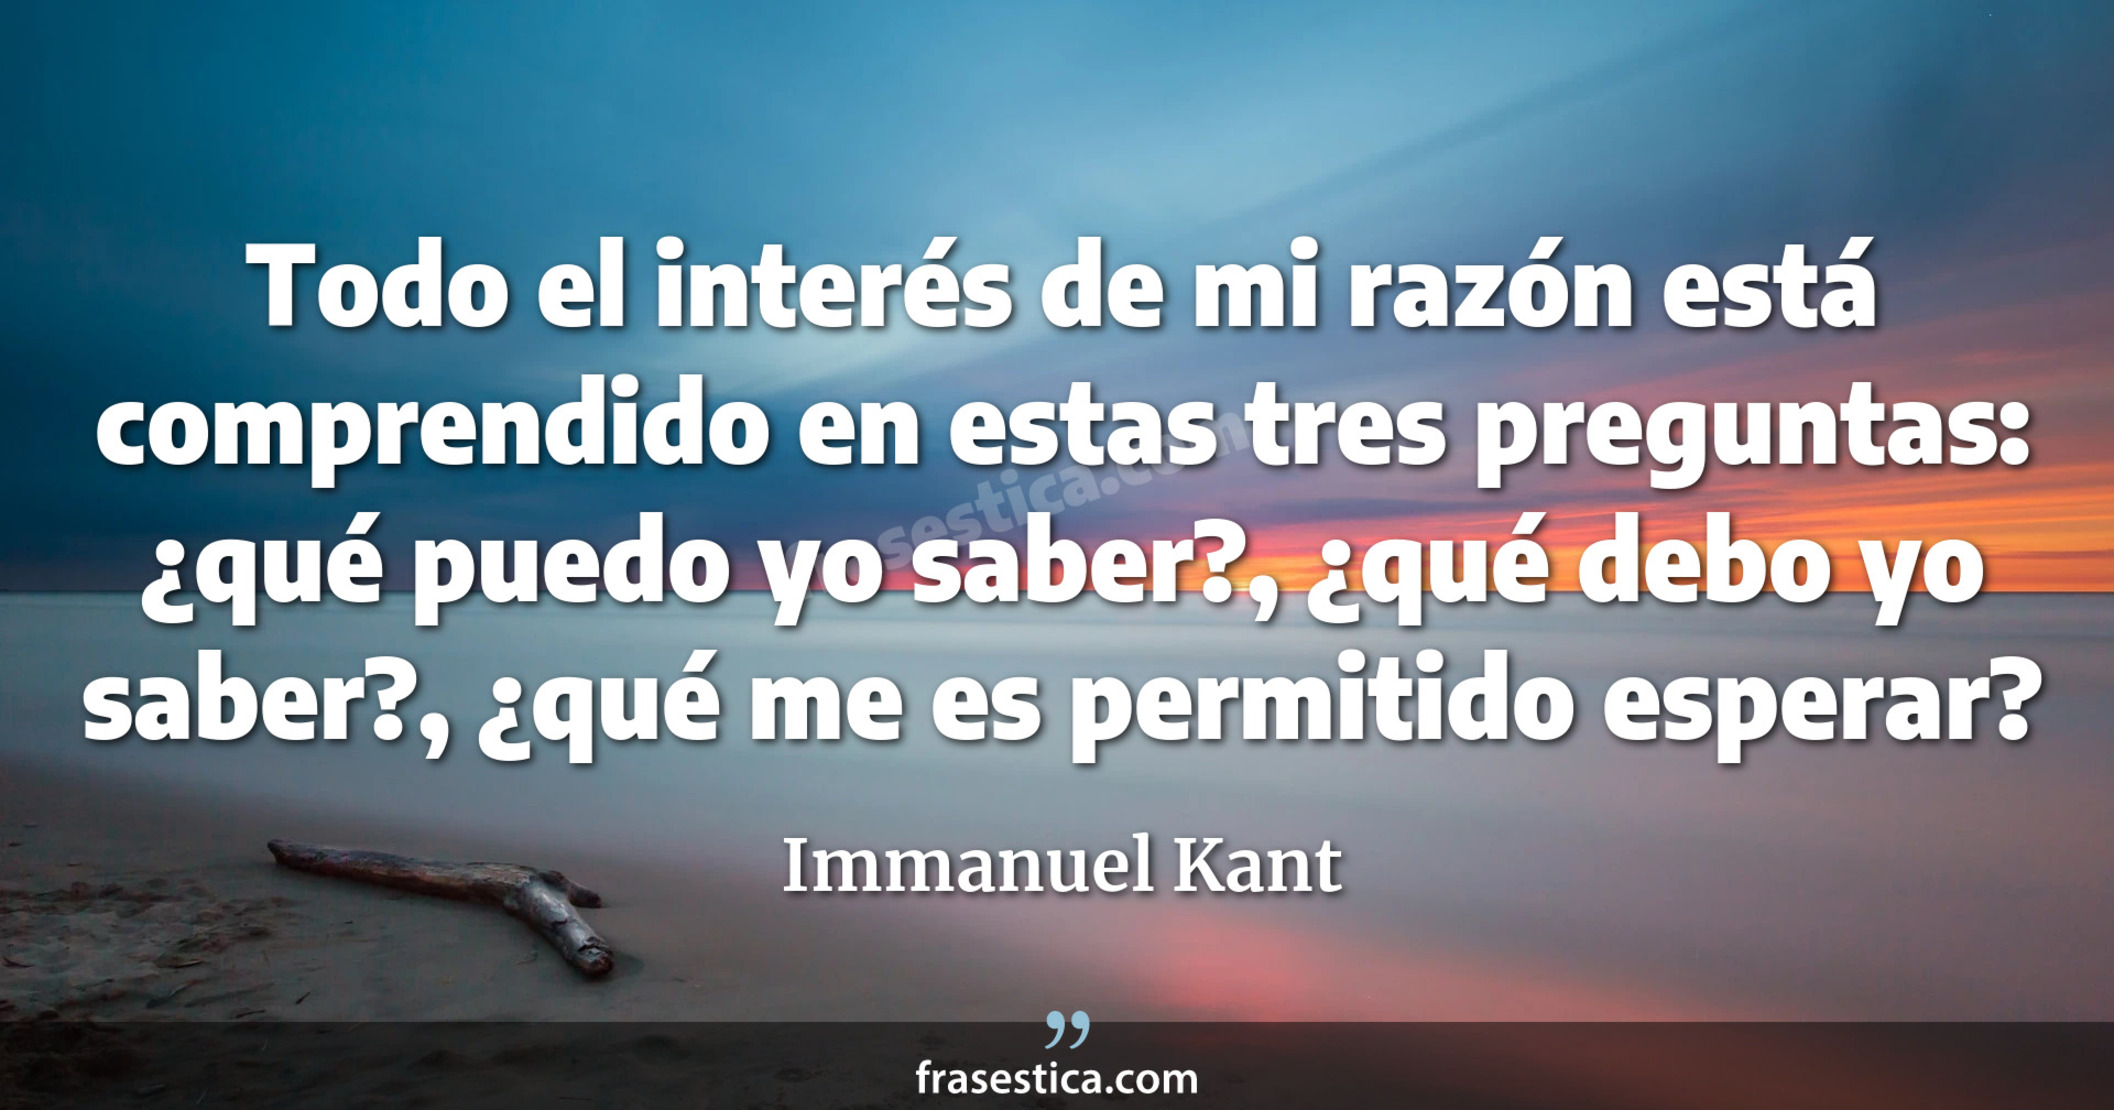 Todo el interés de mi razón está comprendido en estas tres preguntas: ¿qué puedo yo saber?, ¿qué debo yo saber?, ¿qué me es permitido esperar? - Immanuel Kant